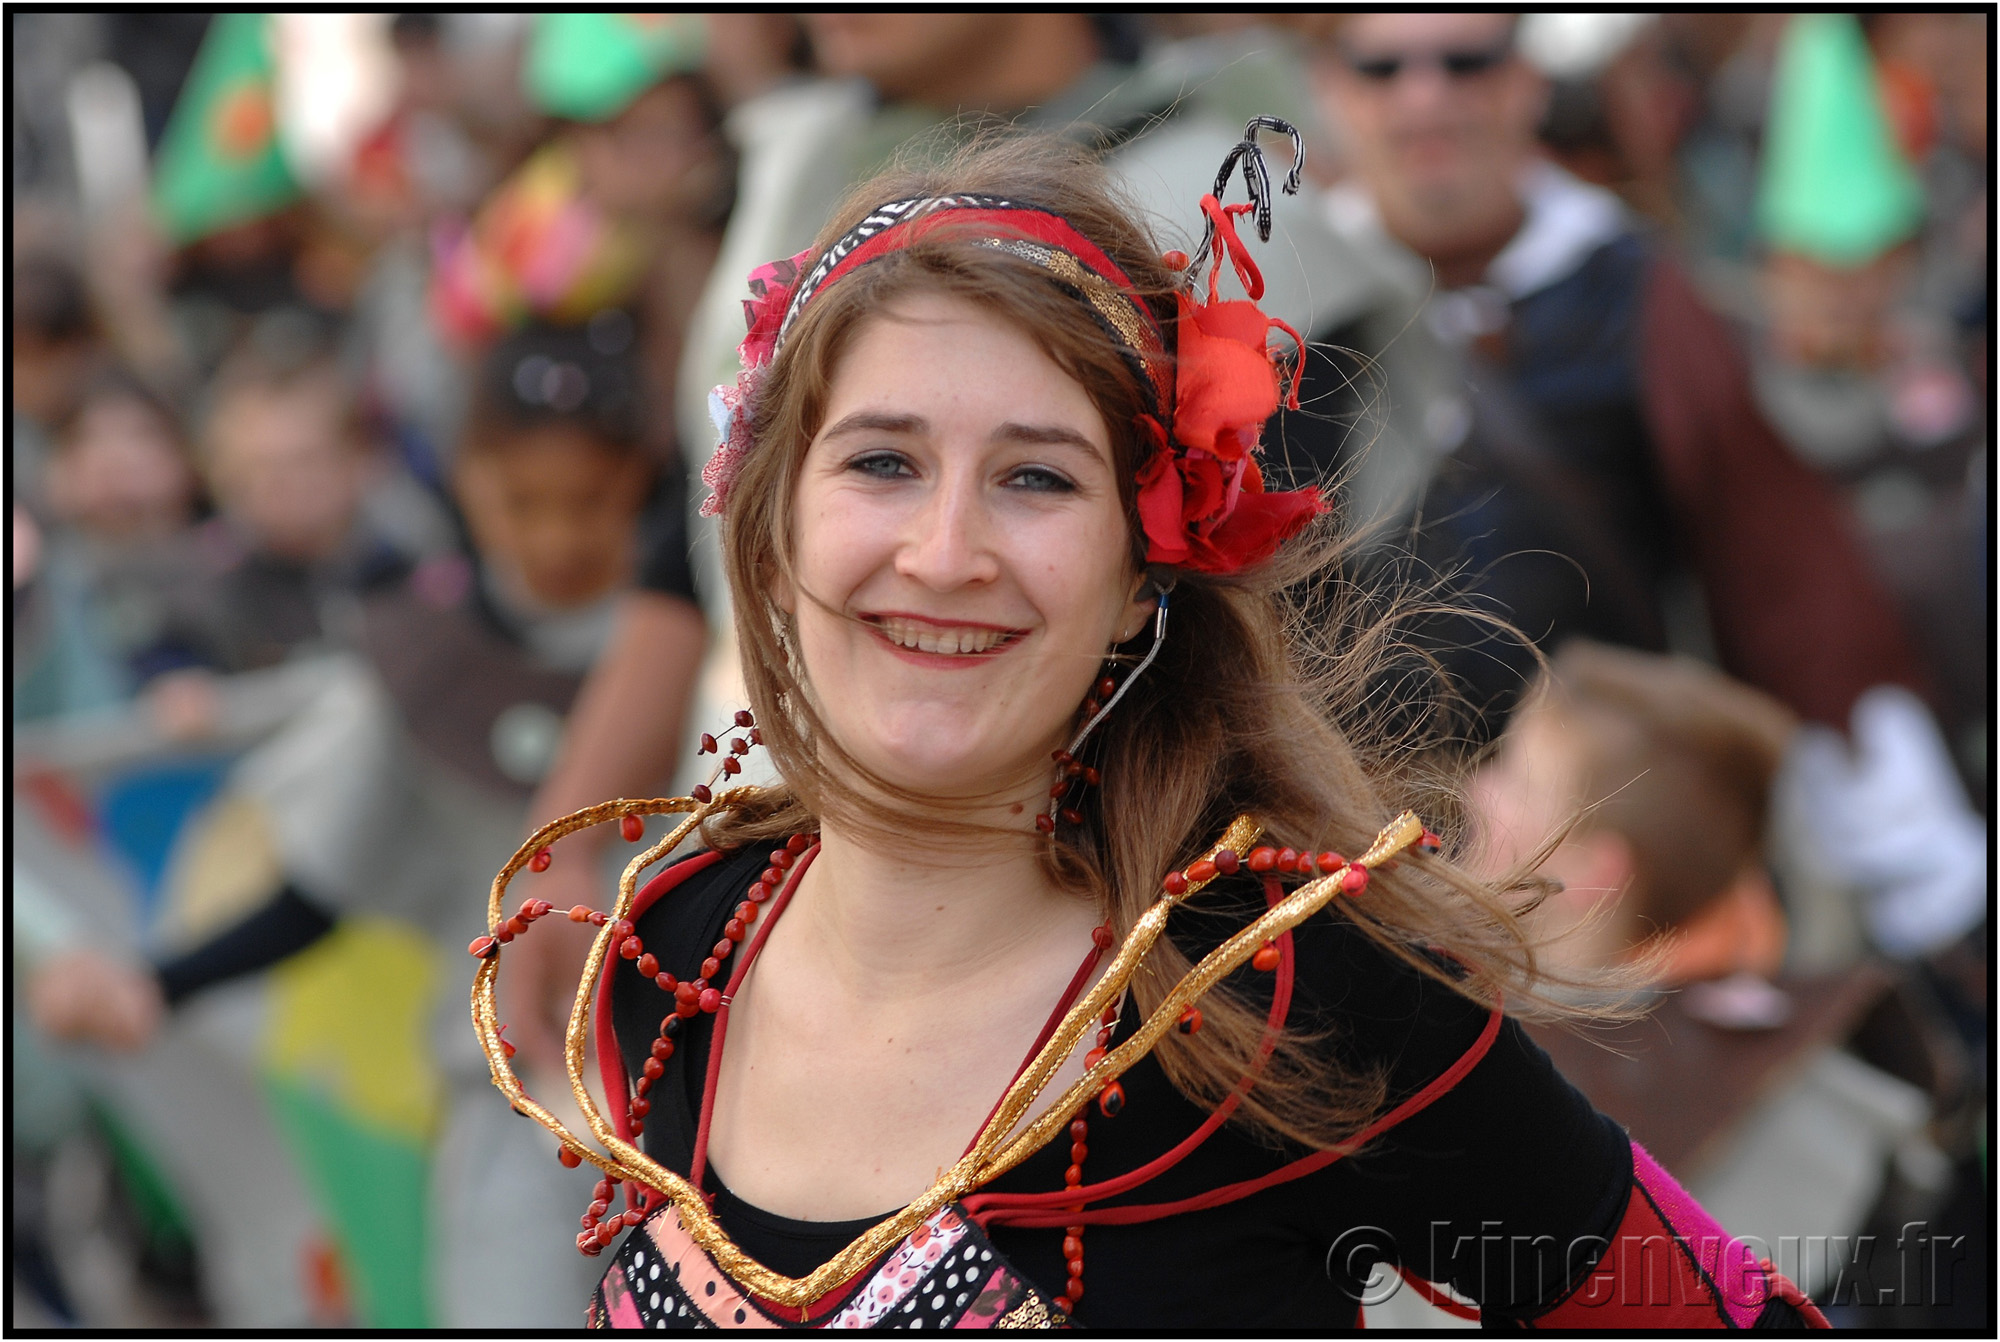 kinenveux_64_carnaval2015lr.jpg - Carnaval des Enfants 2015 - La Rochelle